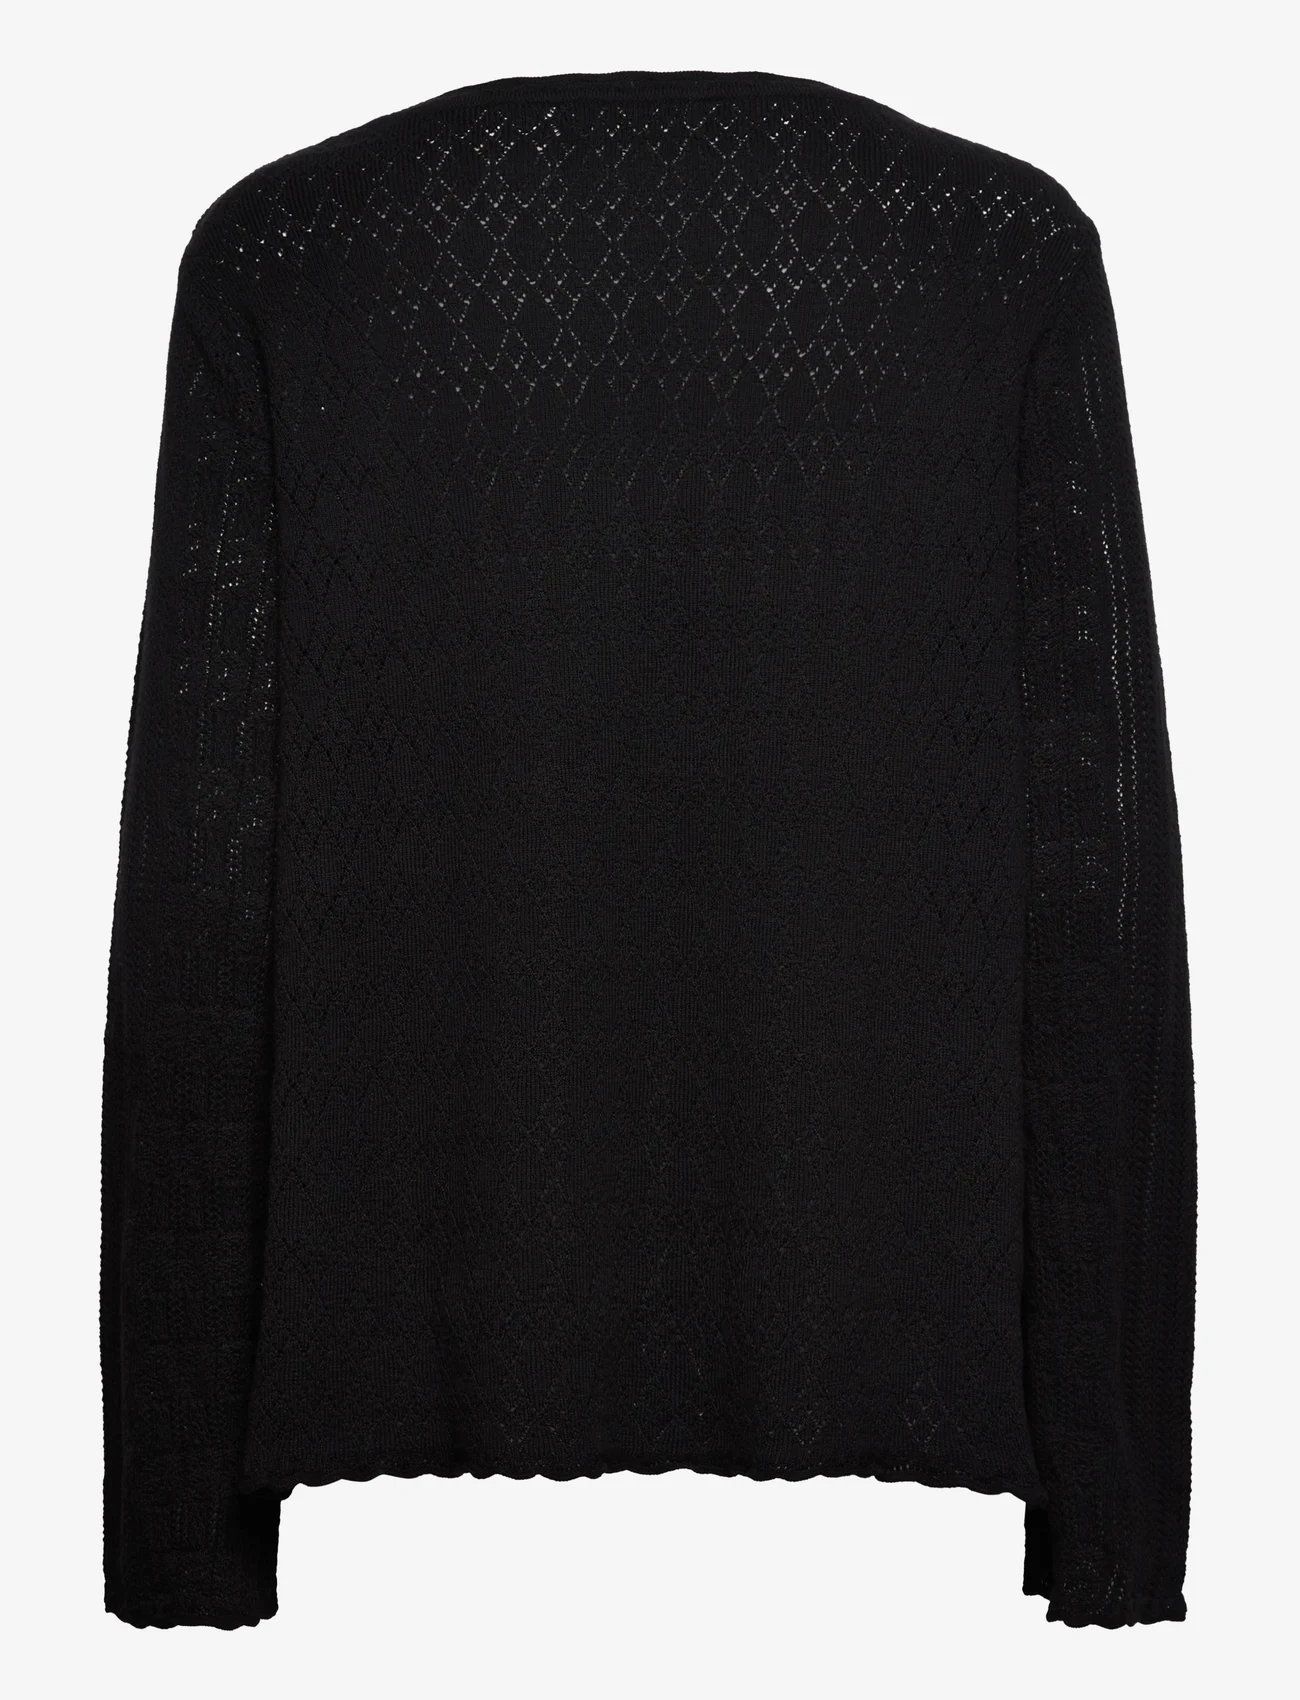 ODD MOLLY - Eden Sweater - truien - almost black - 1